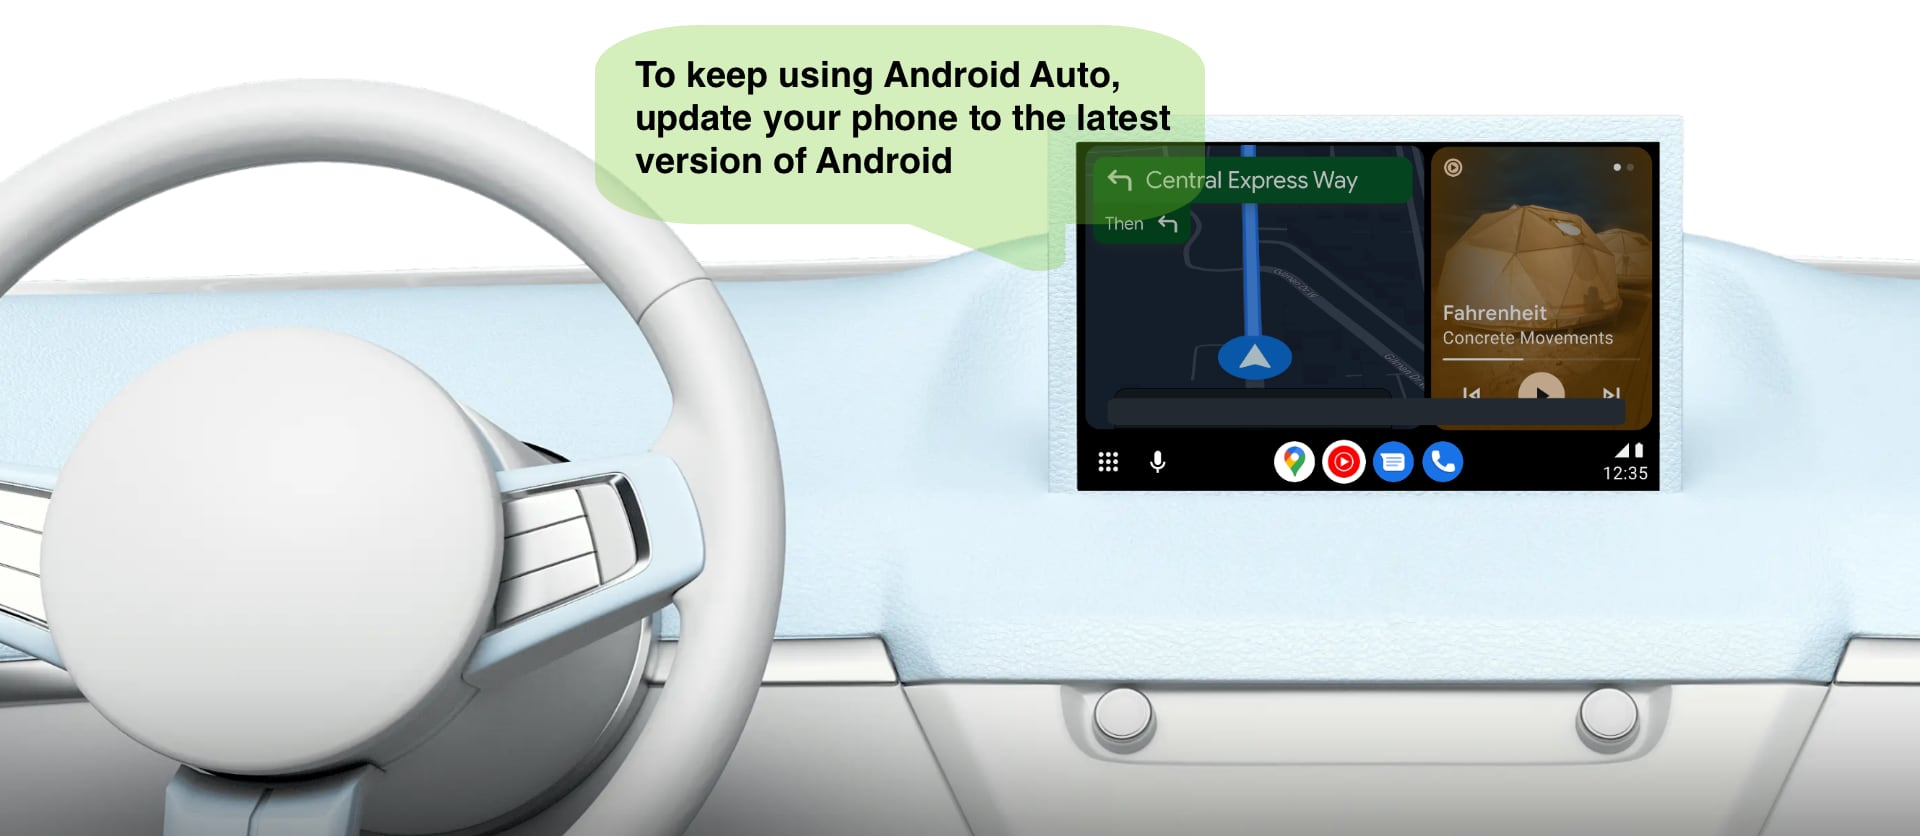 Android Auto kommer snart att sluta fungera på äldre Android-smartphones